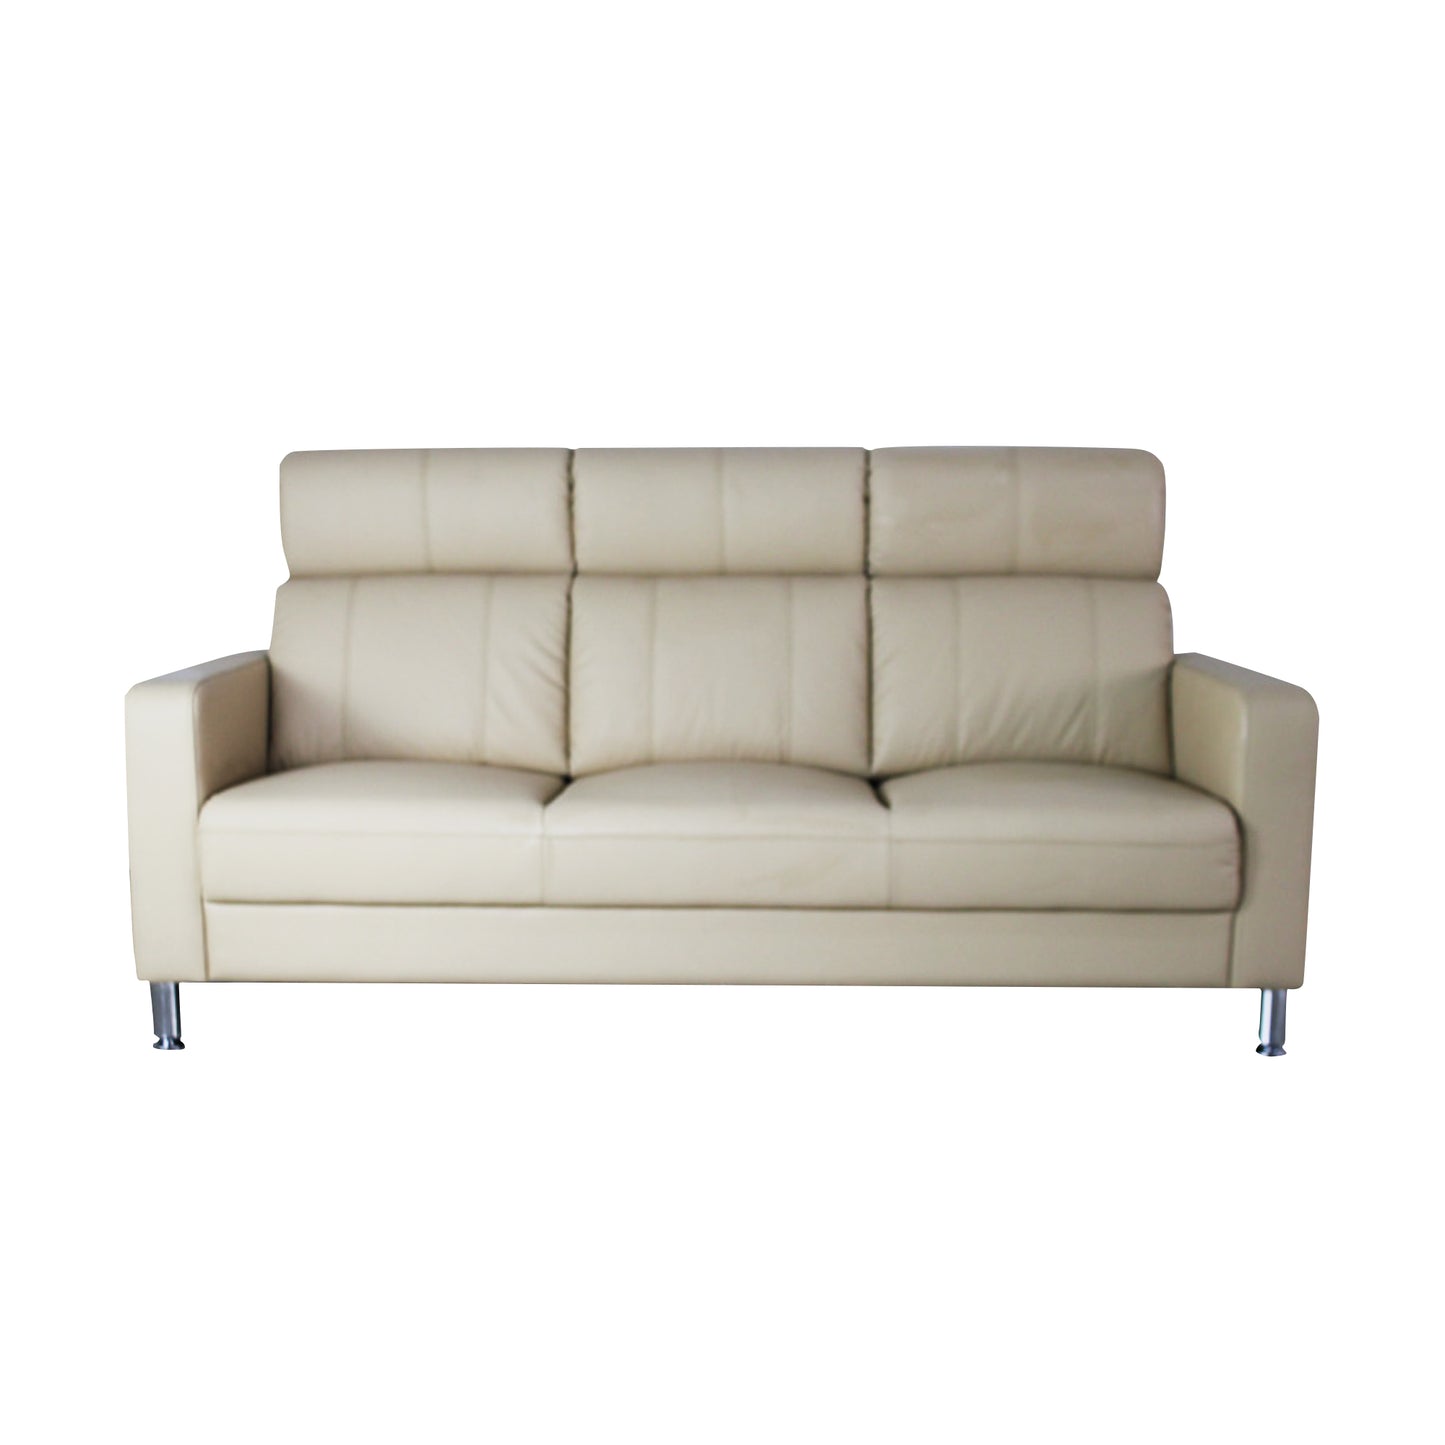 Deluxe series sofa 01818